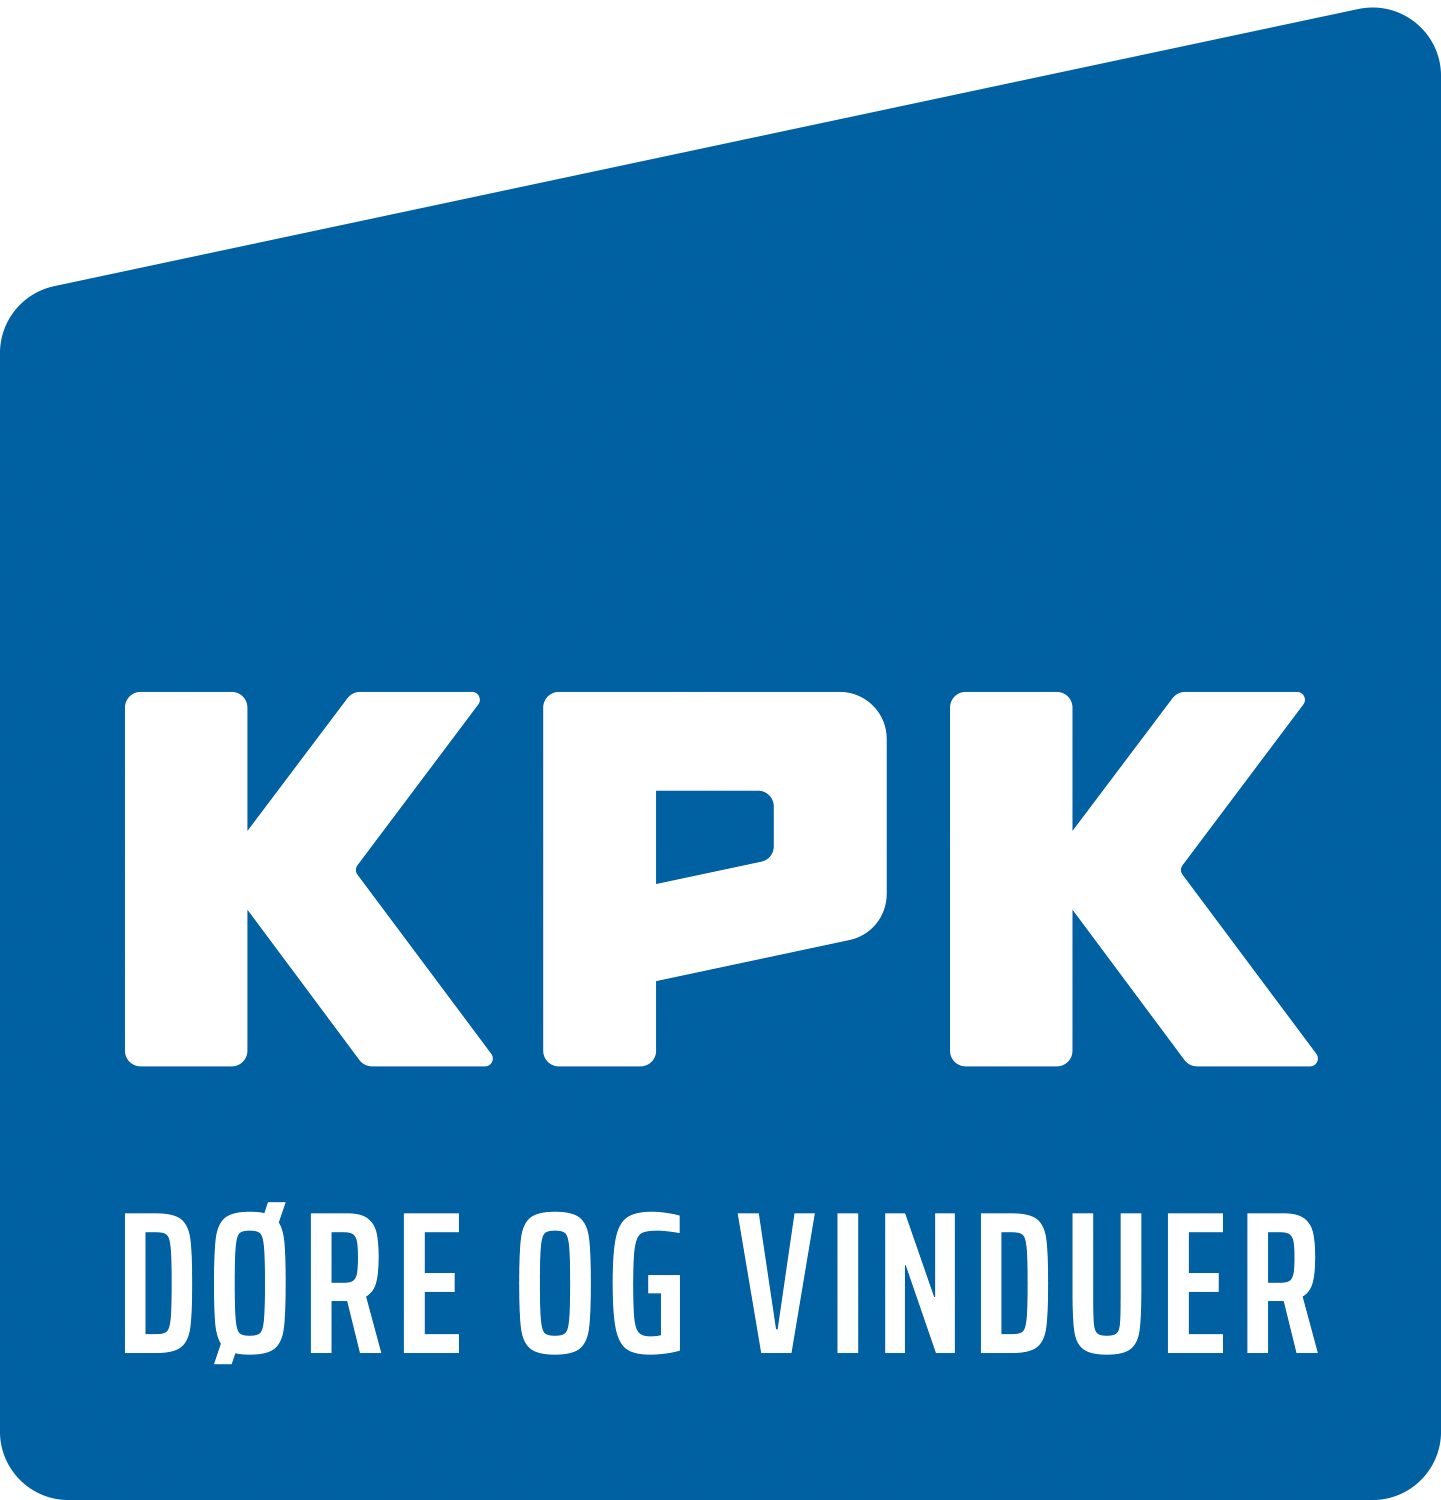 kpk-logo